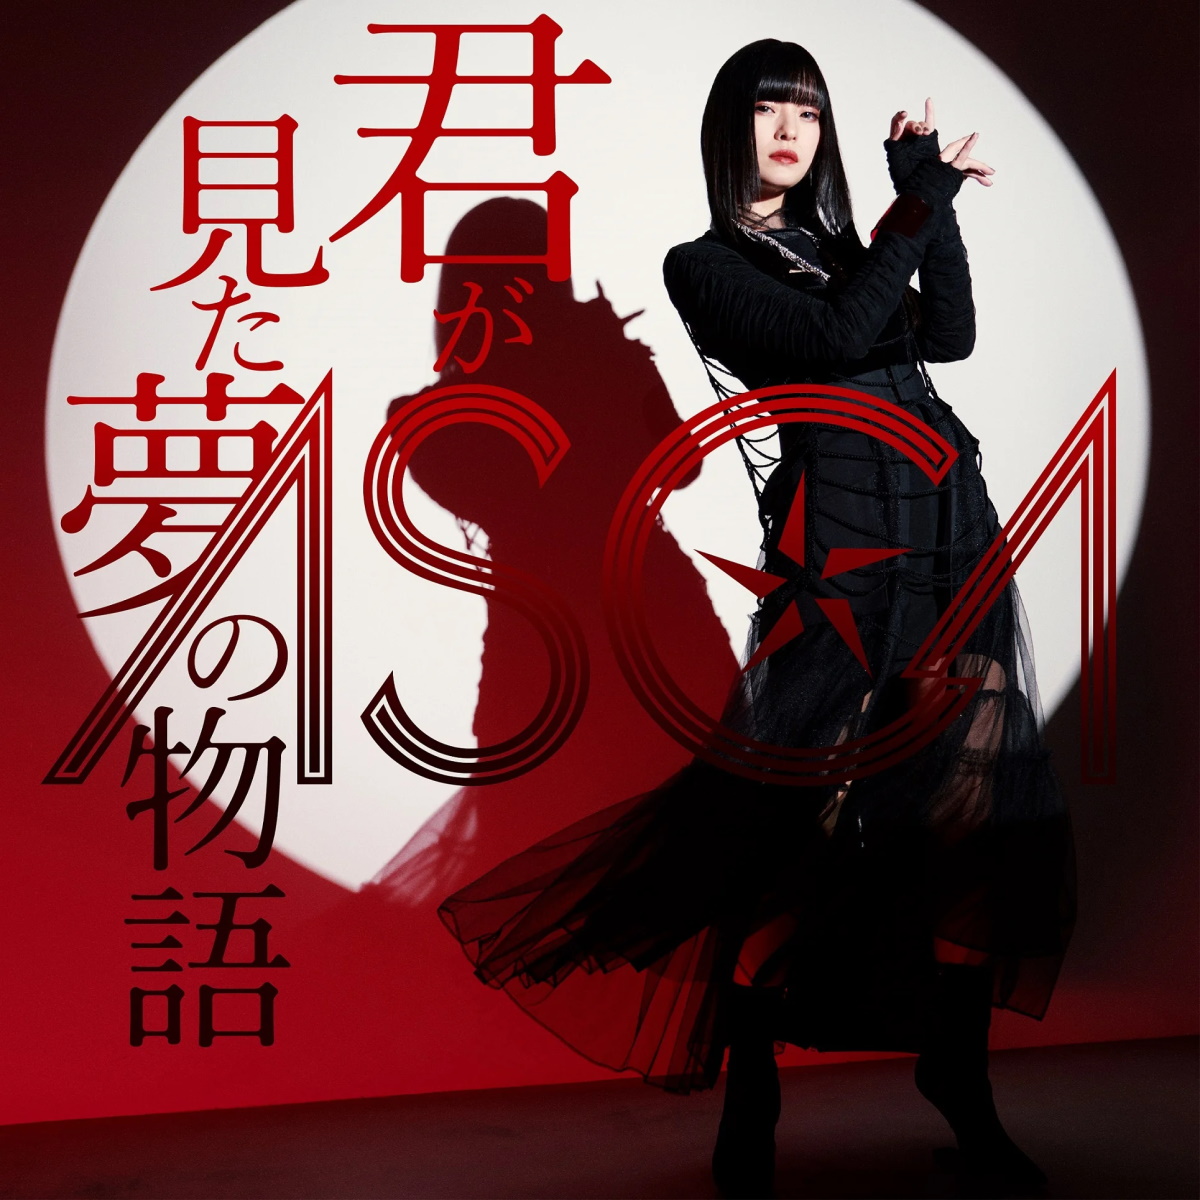 Cover for『ASCA - Kinmokusei』from the release『Kimi ga Mita Yume no Monogatari』